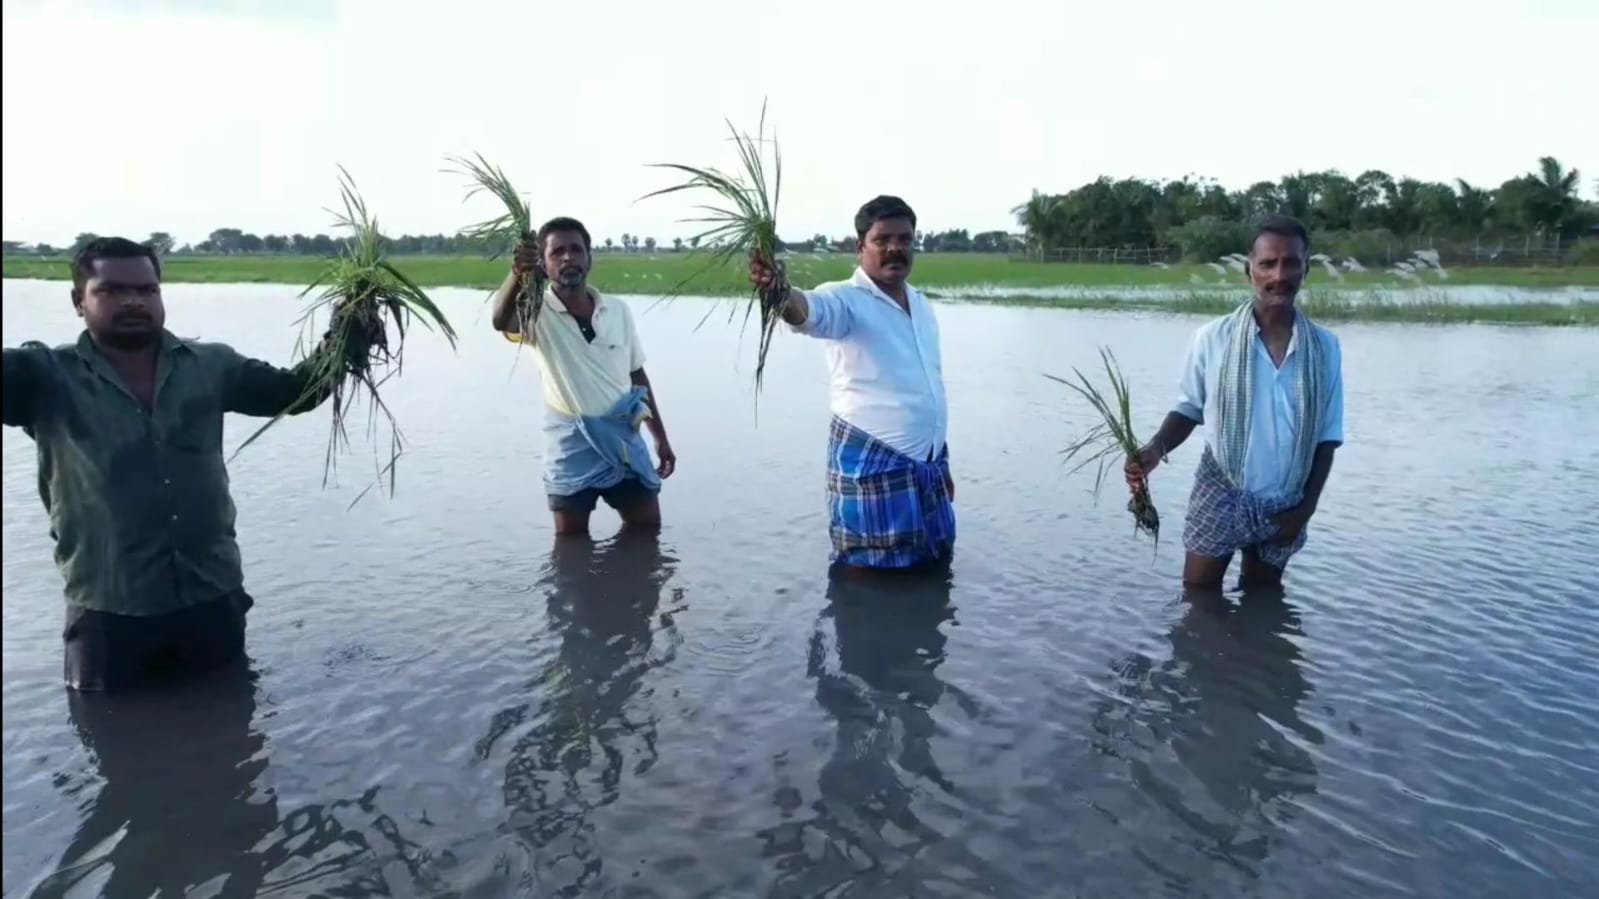 TN Rain: கடலூர் மாவட்டத்தில் தொடர்ந்து பெய்து வரும் மழை - ஆறு போல் காட்சியளிக்கும் விளை நிலங்கள்